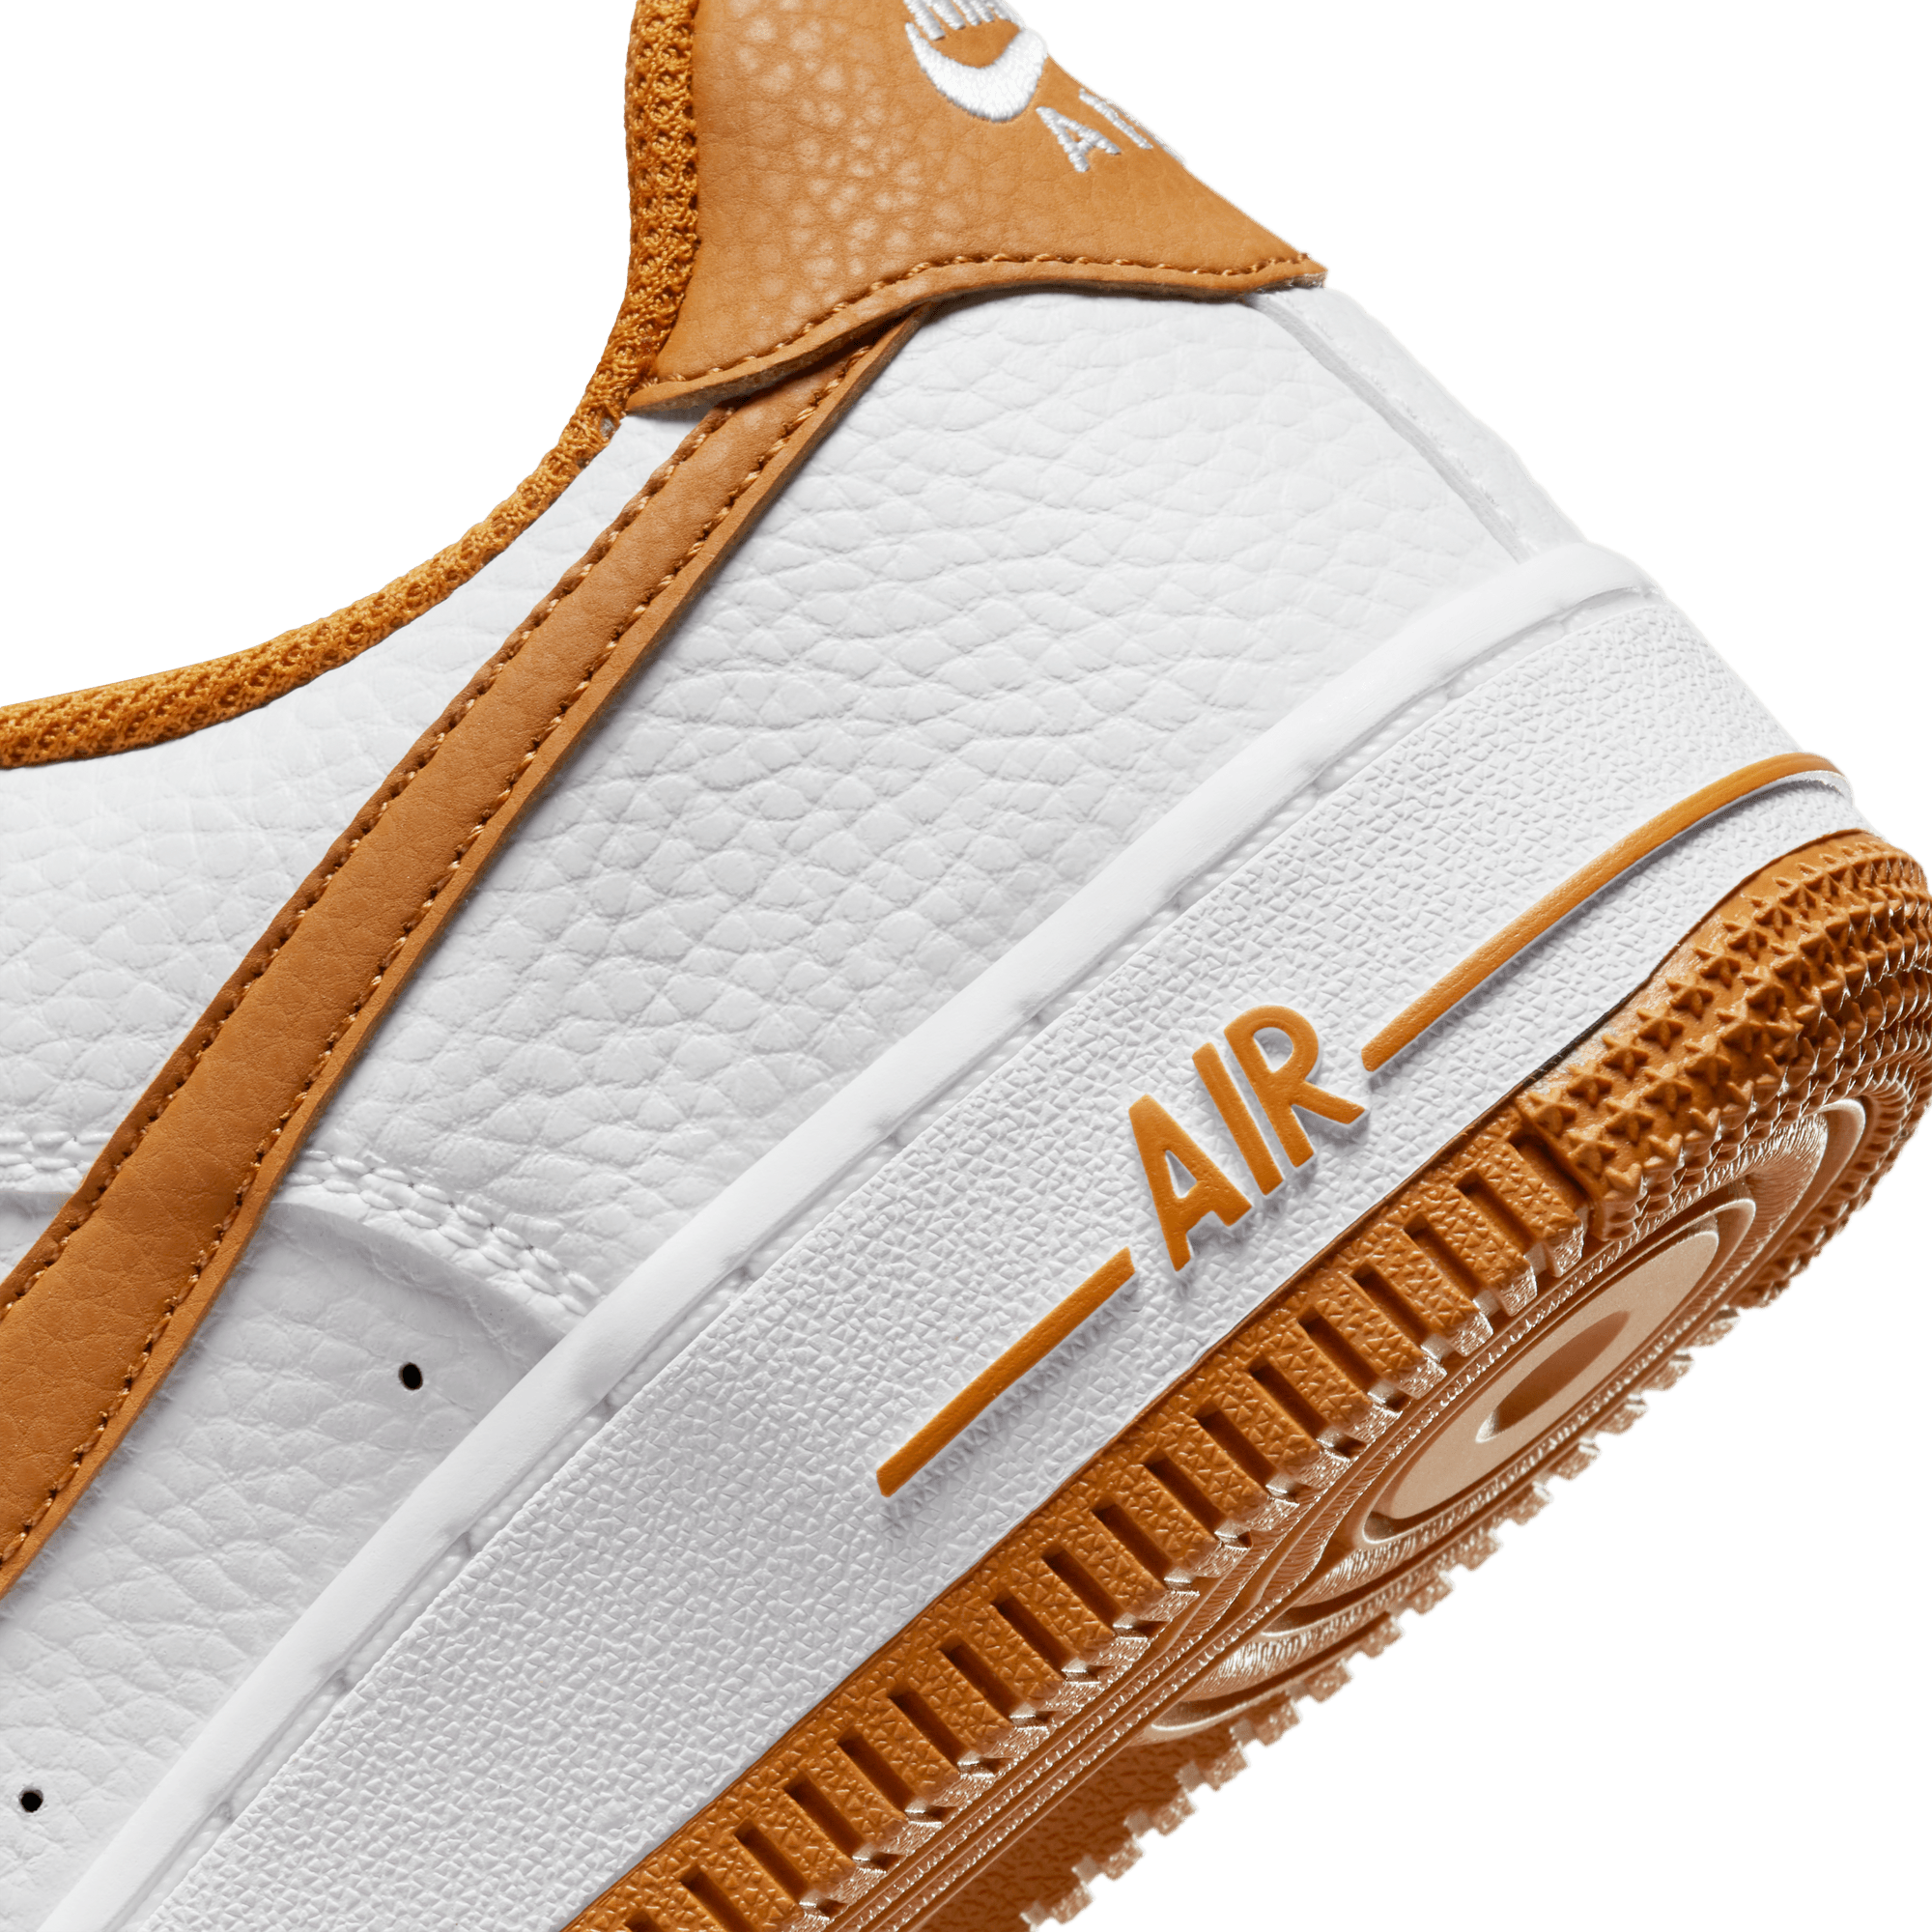 Nike Air Force 1 '07 LV8 NN sneakers in orange